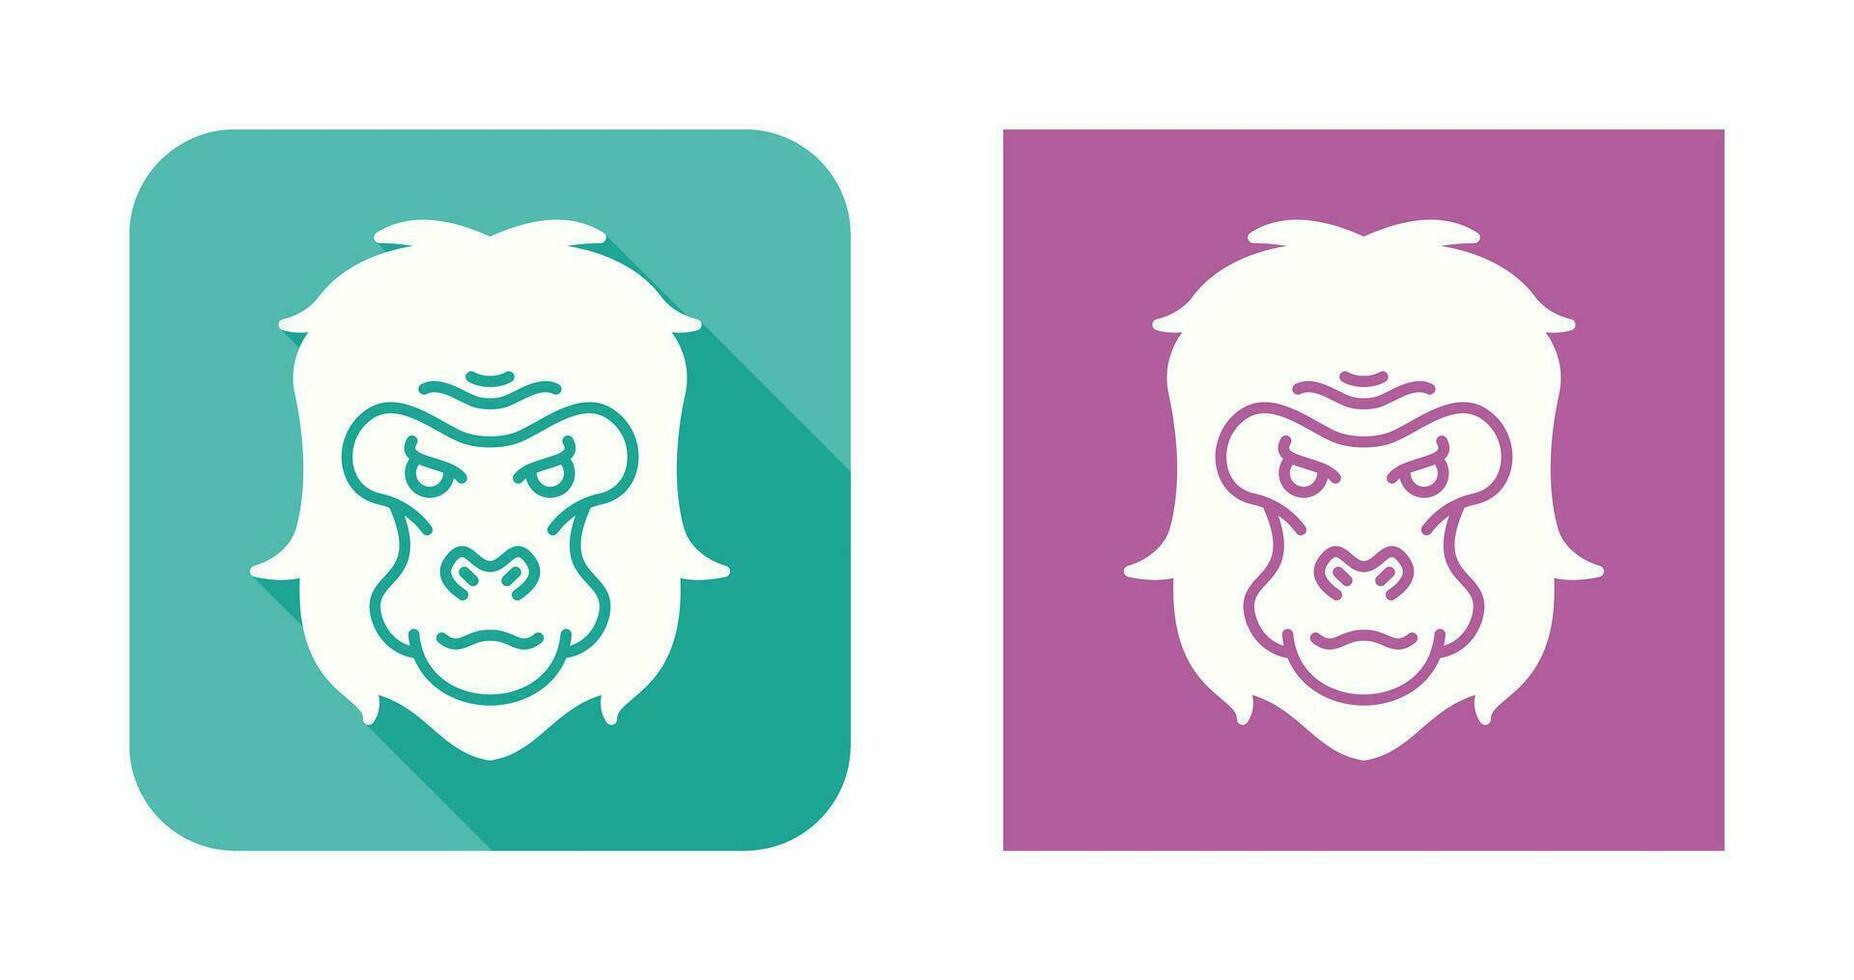 icône de vecteur de gorille